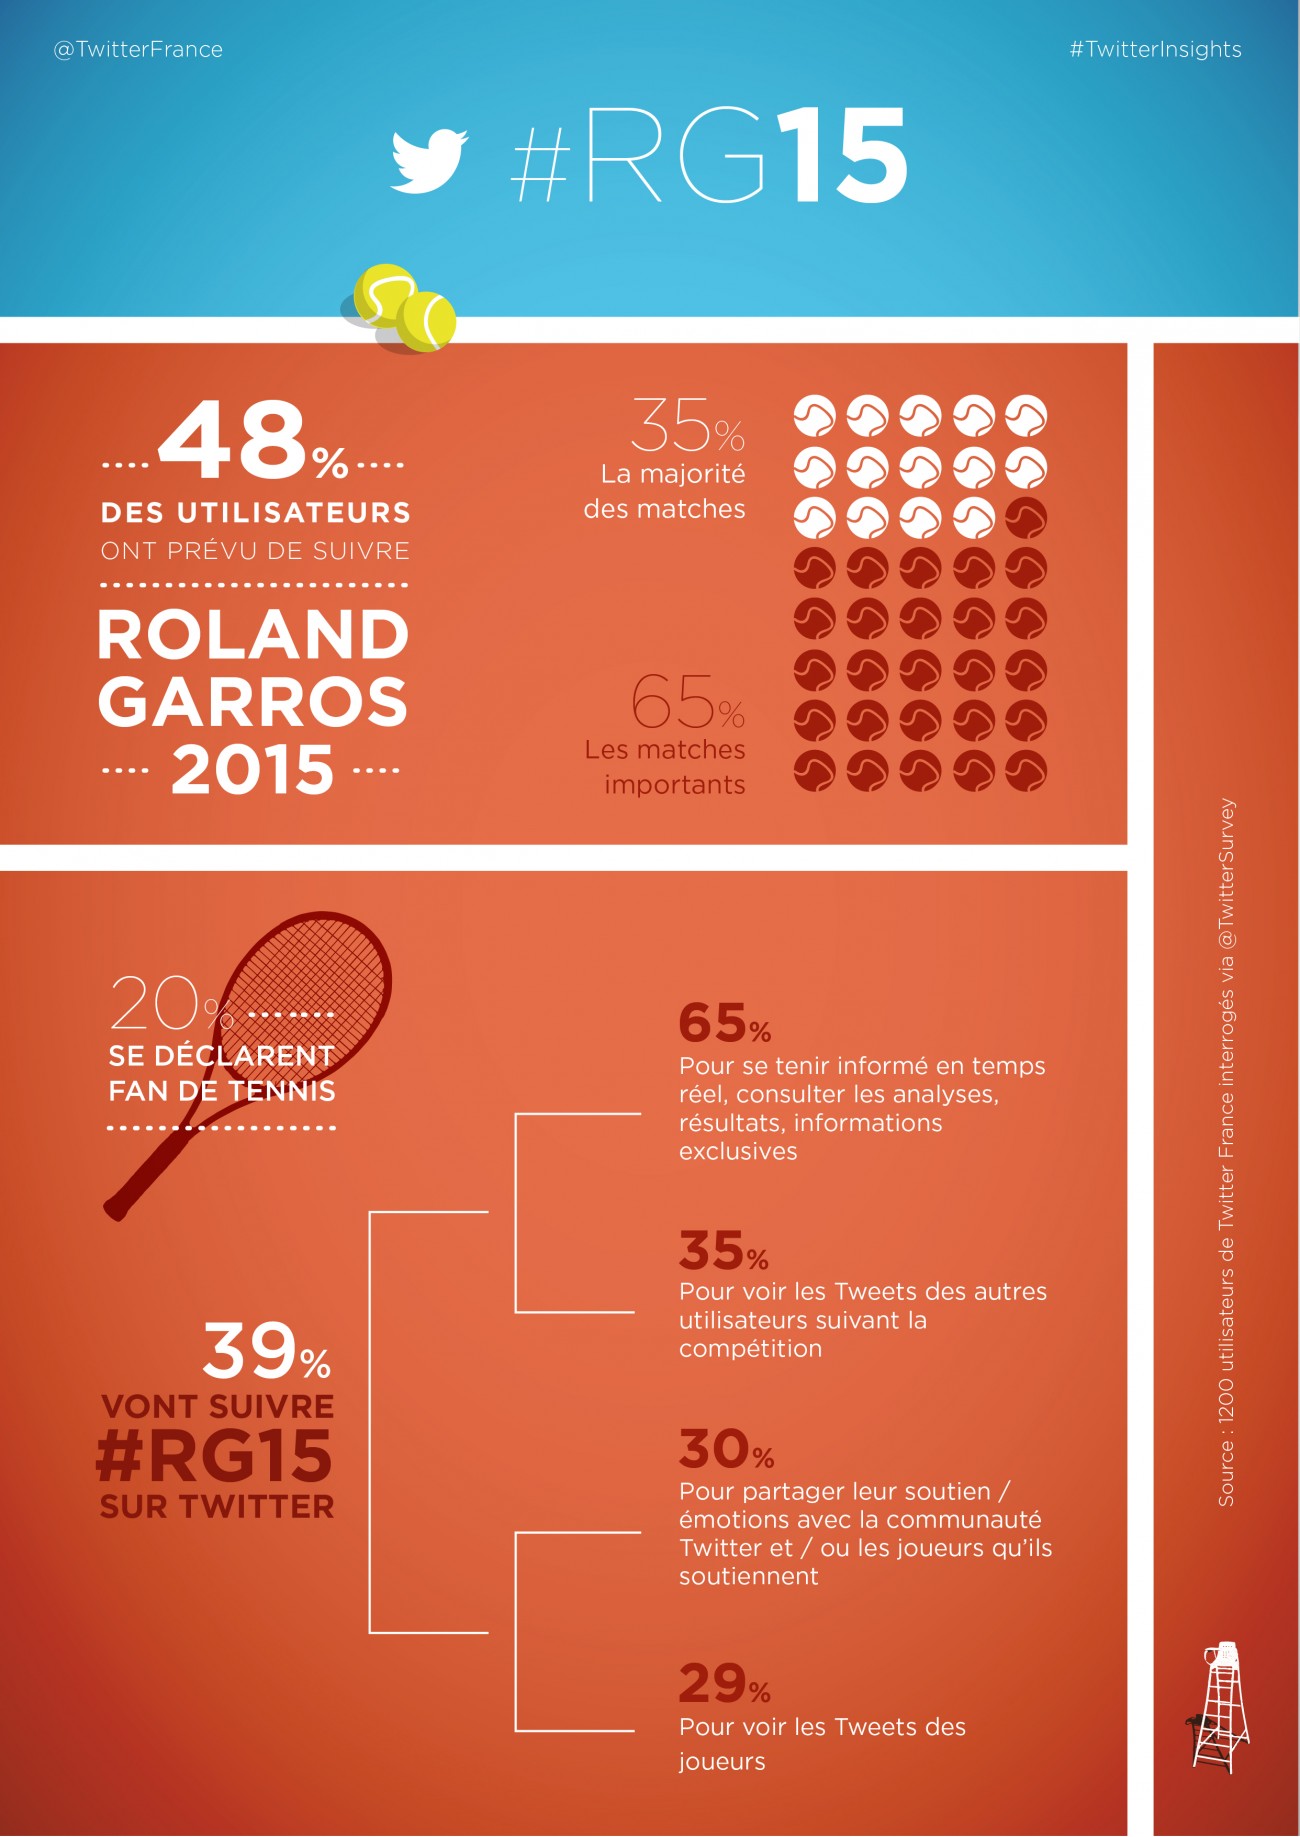 roland garros 2015 infographie Twitter